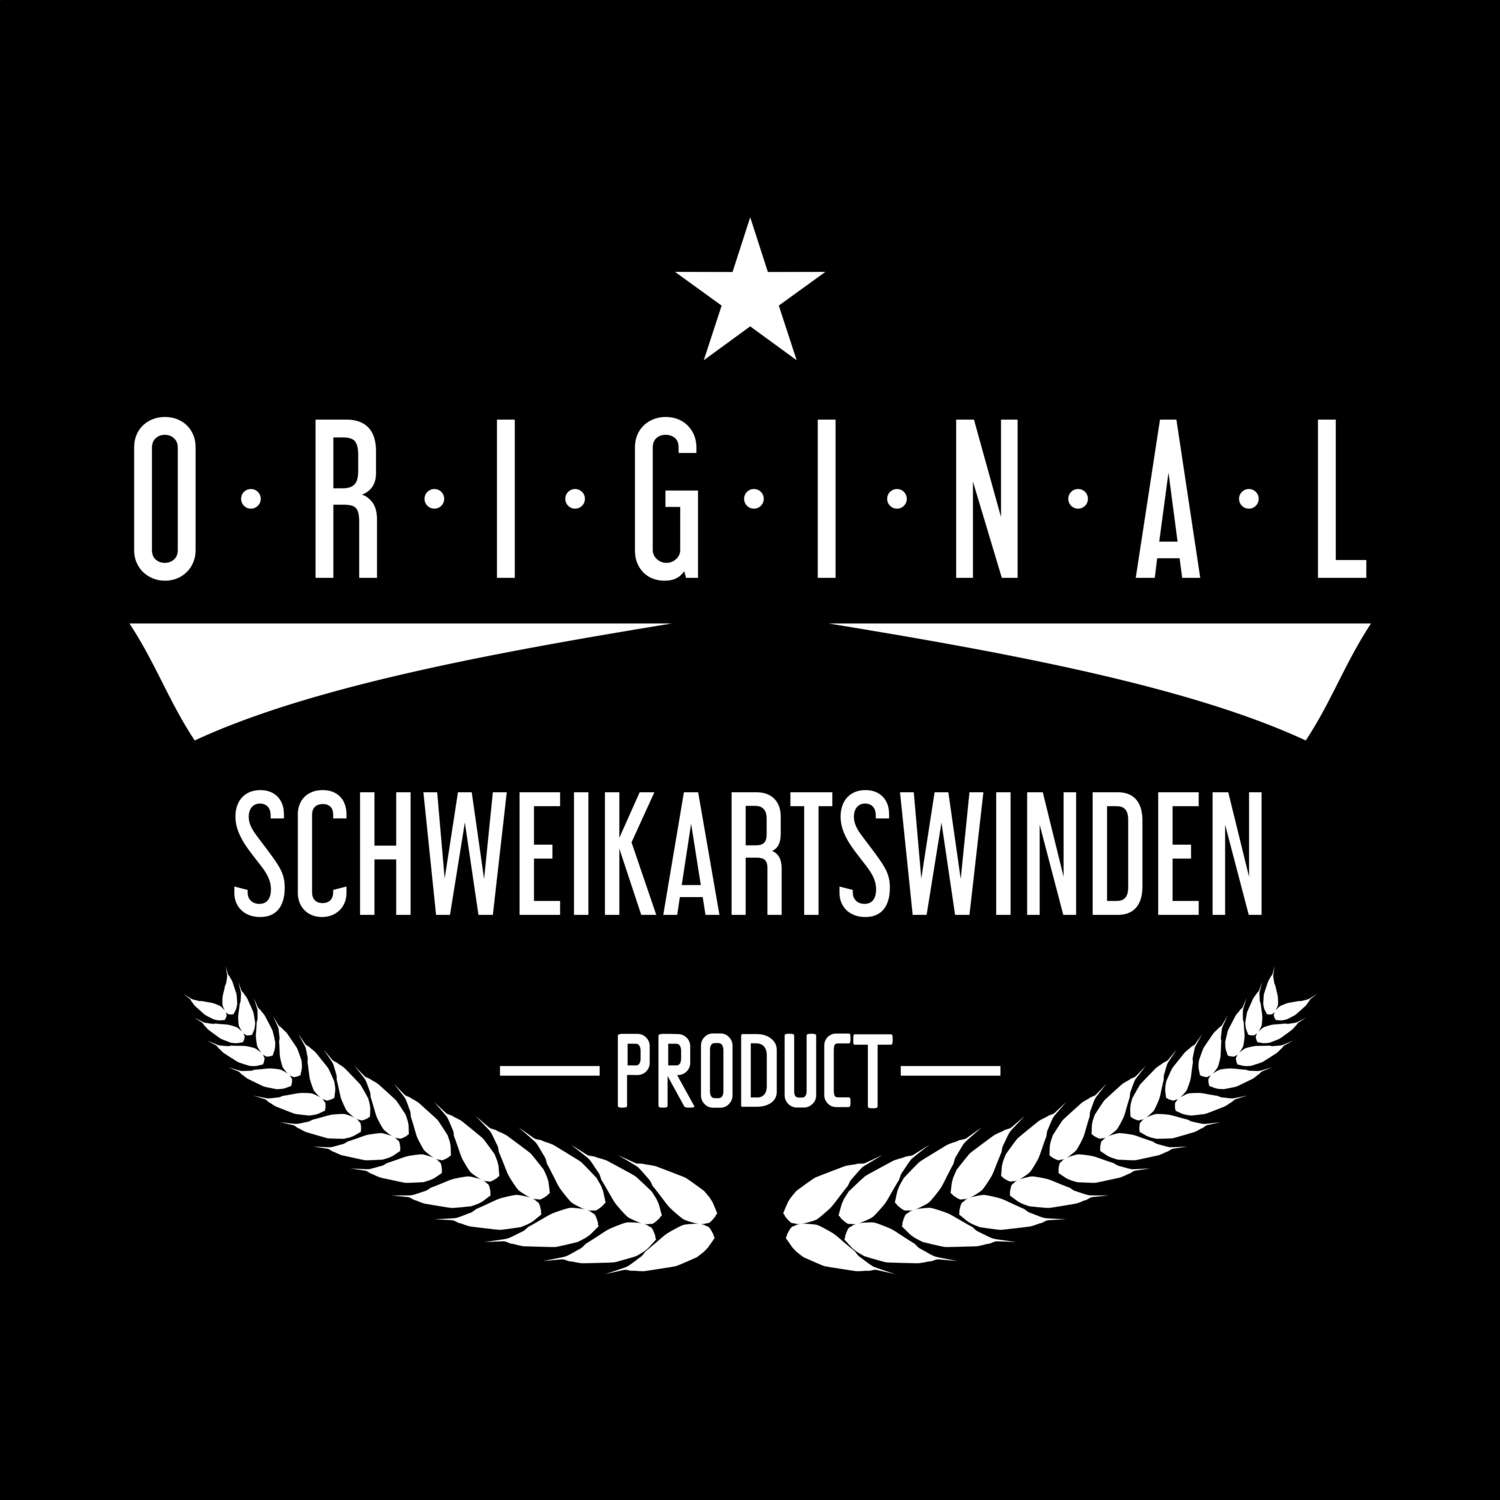 Schweikartswinden T-Shirt »Original Product«